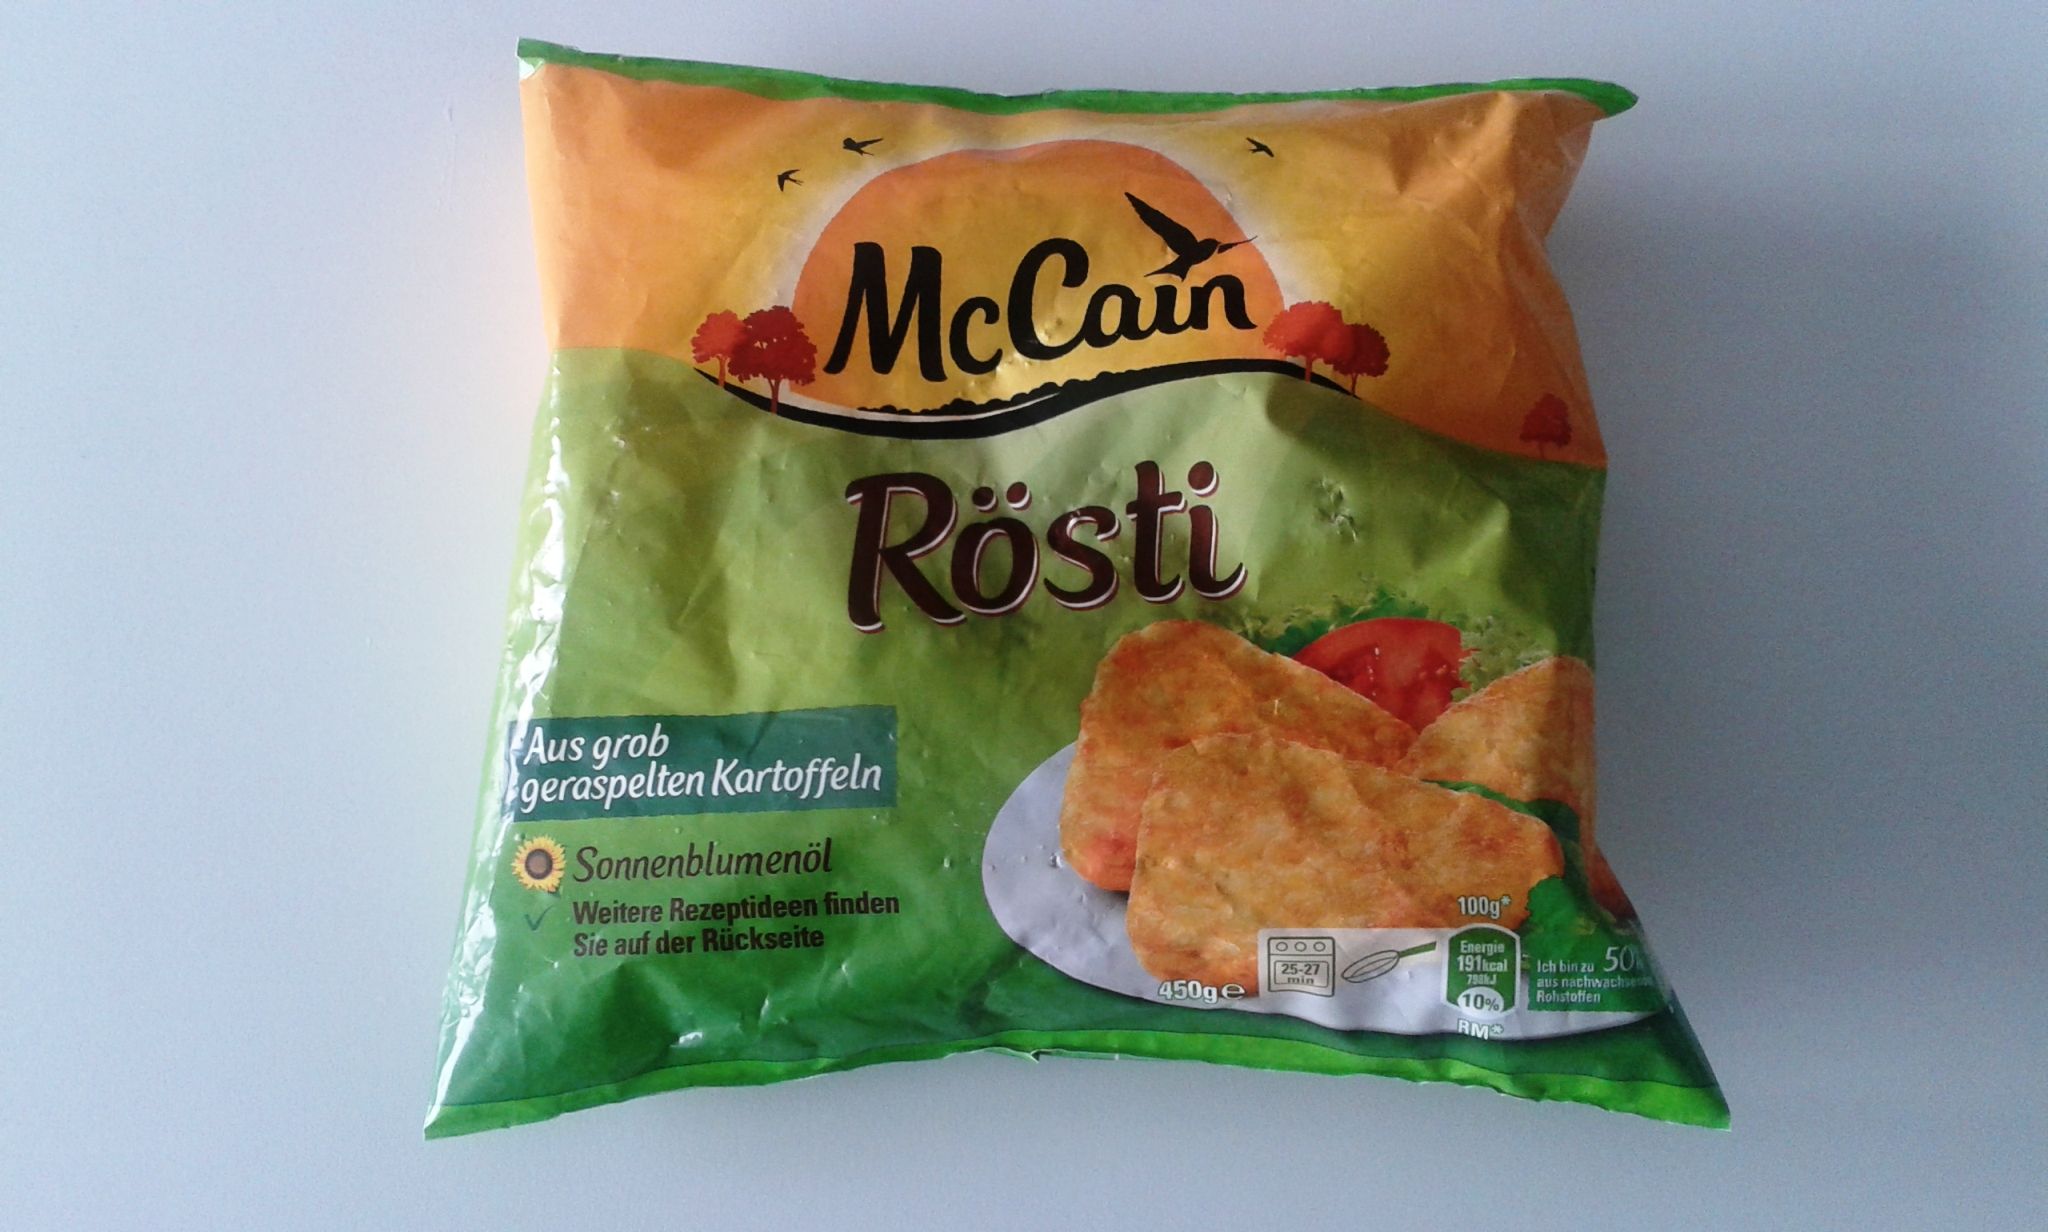 In der 450 und 1000 Gramm Packung von McCain Rösti können scharfkantige Plastikteile enthalten sein. McCain fordert die Verbraucher zur Vernichtung auf und erstattet den Kaufpreis in einem ziemlich komplizierten Verfahren, so dass sich für die Verbraucher die Kaufpreisrückforderung eigentlich nicht lohnt. (Foto McCain)